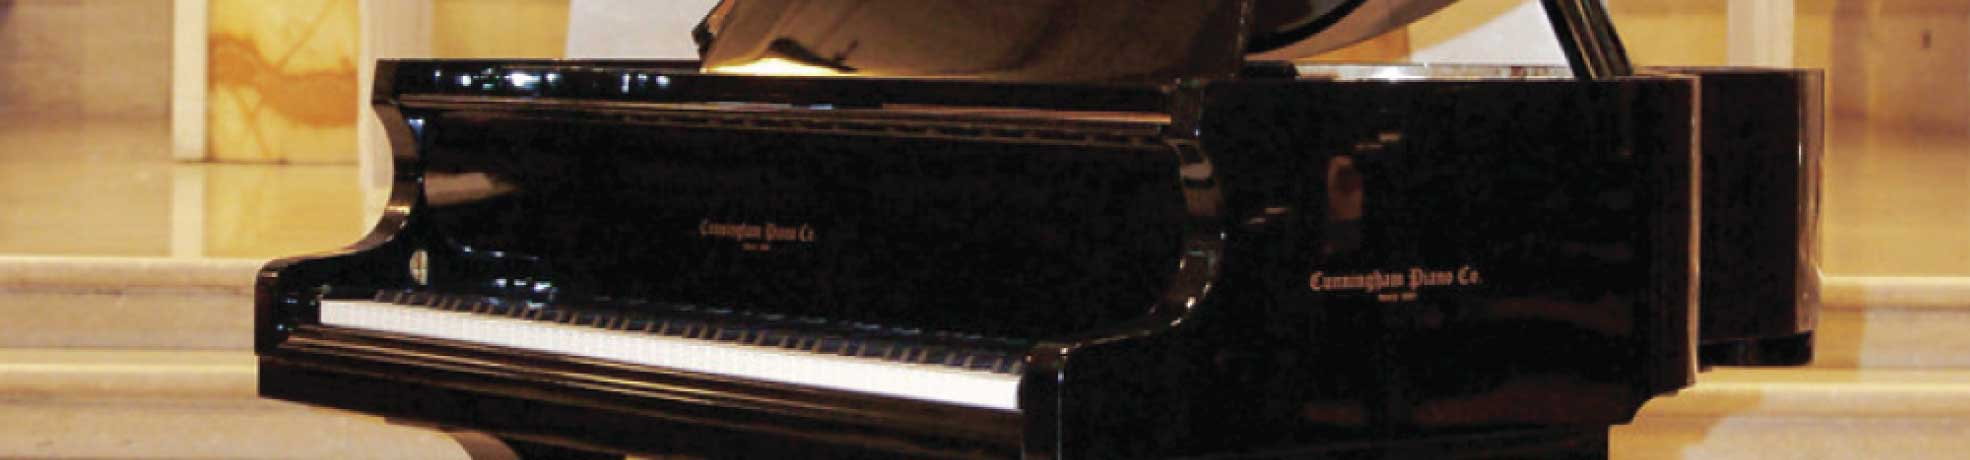 Cunningham Pianos